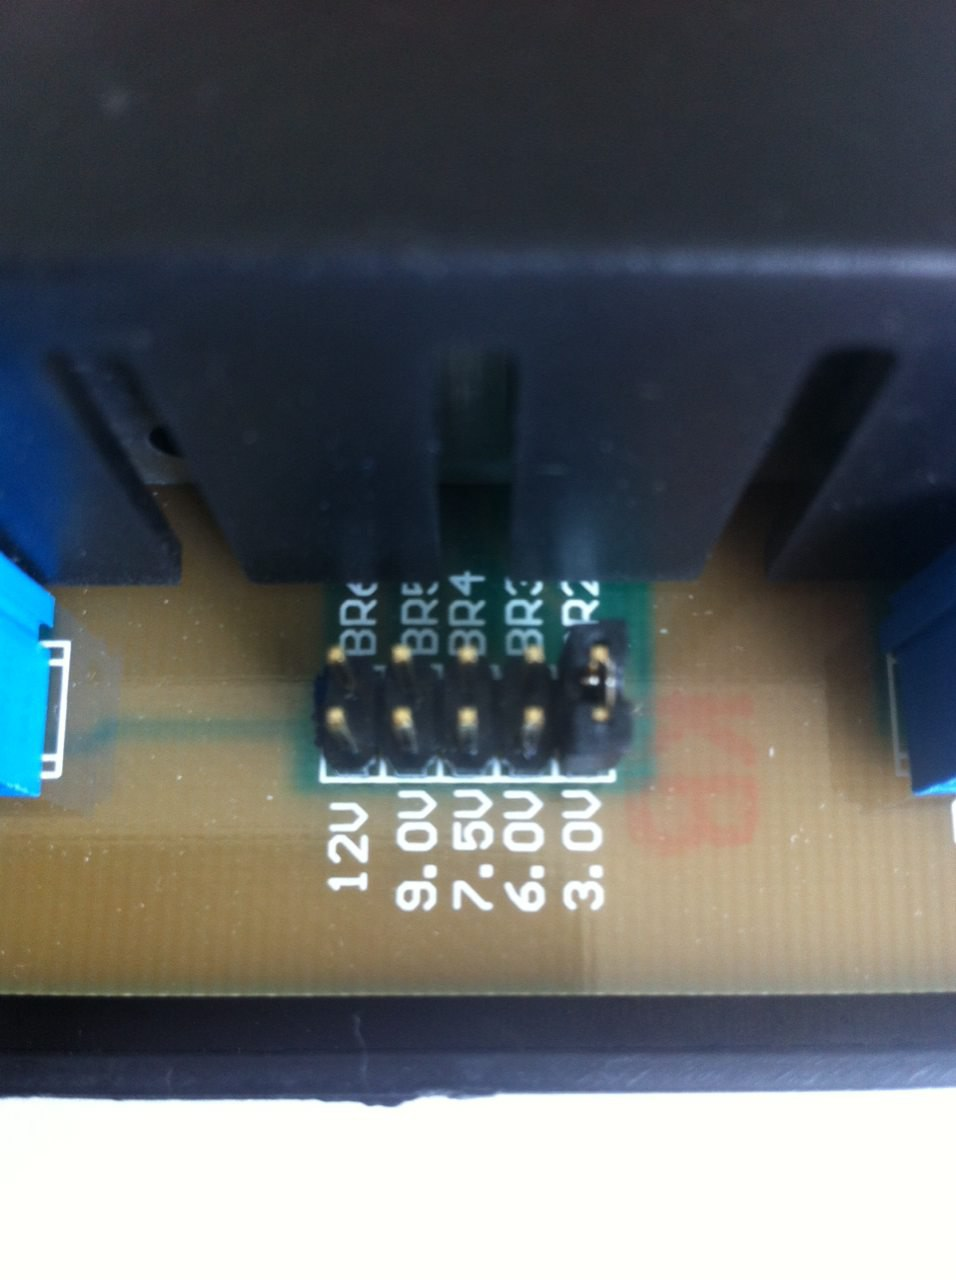 Контроллер заряда Steca PR 1515 12/24В + подарок конвертер STECA SOLSUM.